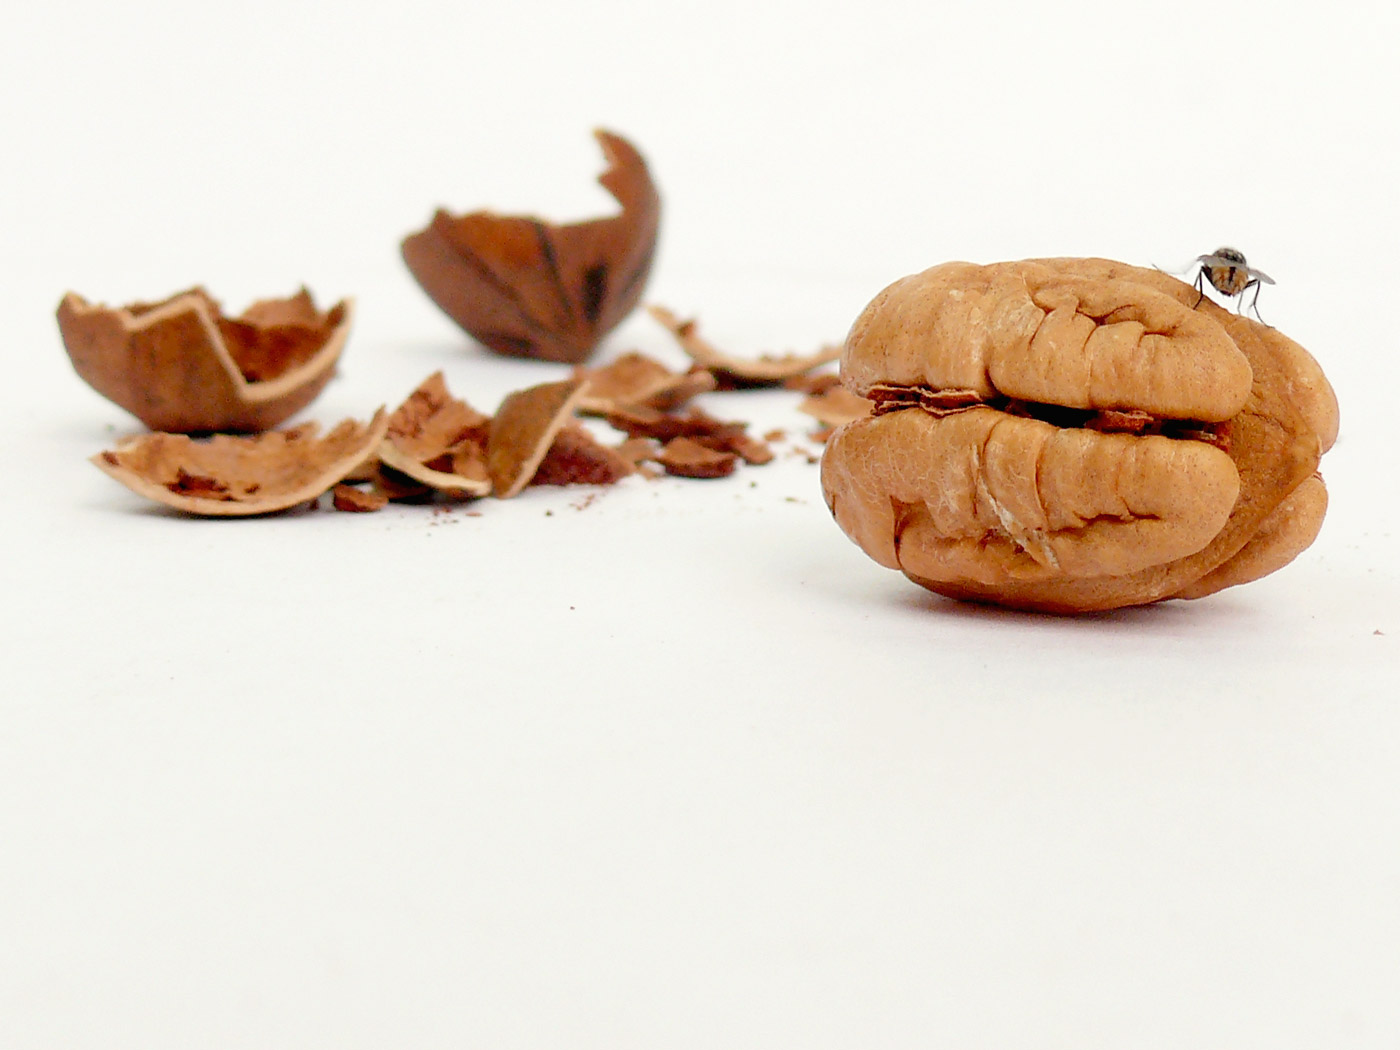 The fly likes the walnut, copyright Picturejockey : Navin Harish 2005-2013